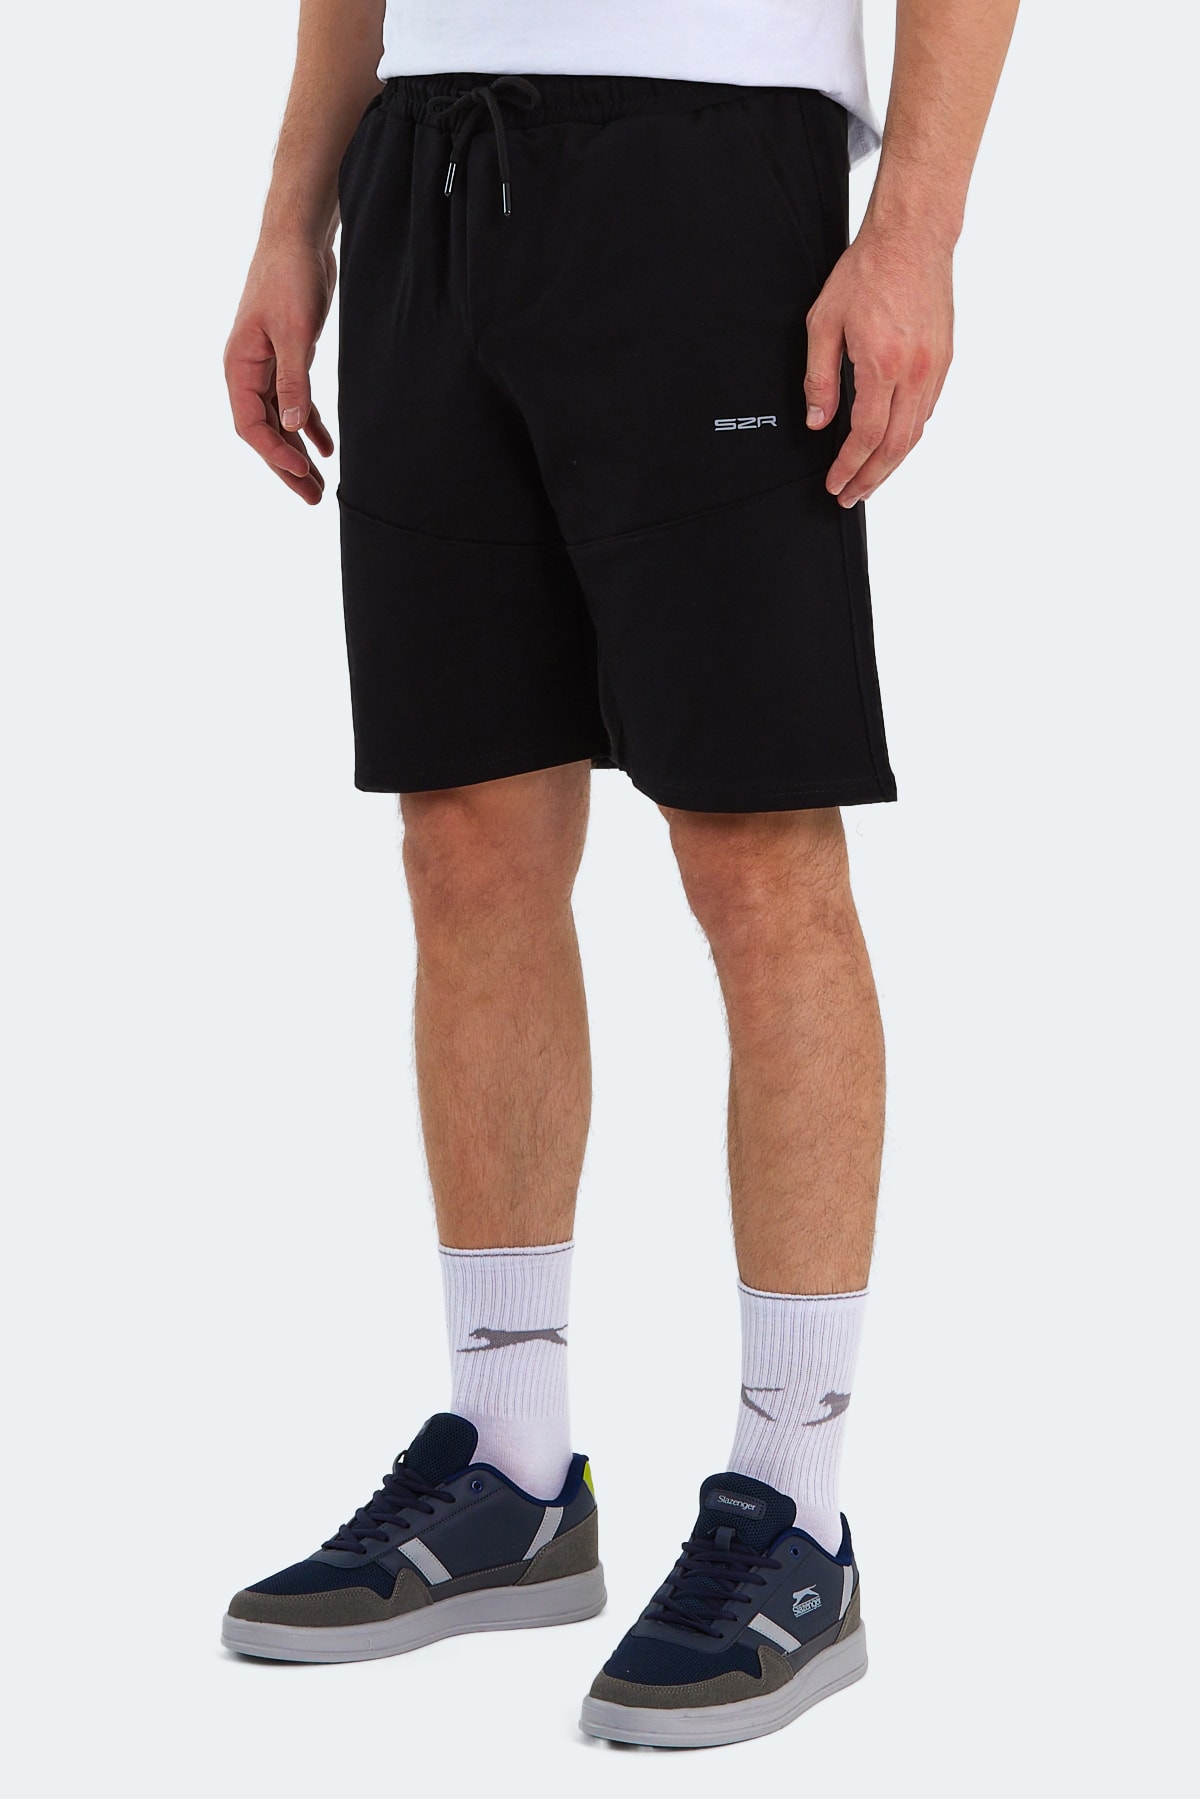 Slazenger ORIA Men's Shorts Black